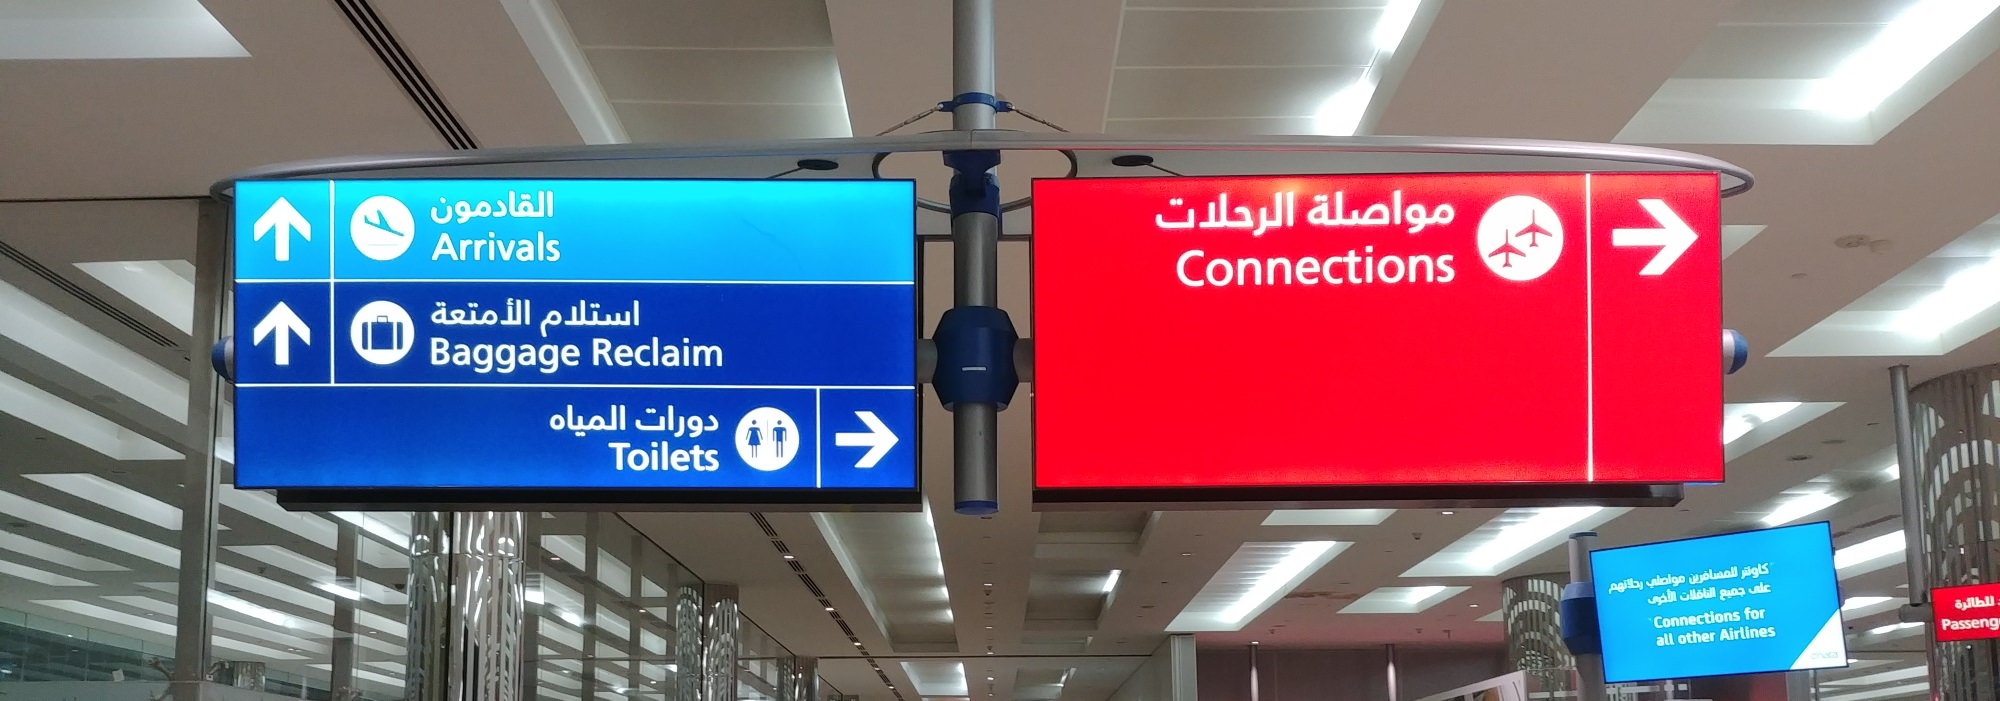 Wegweiser am Flughafen in Dubai